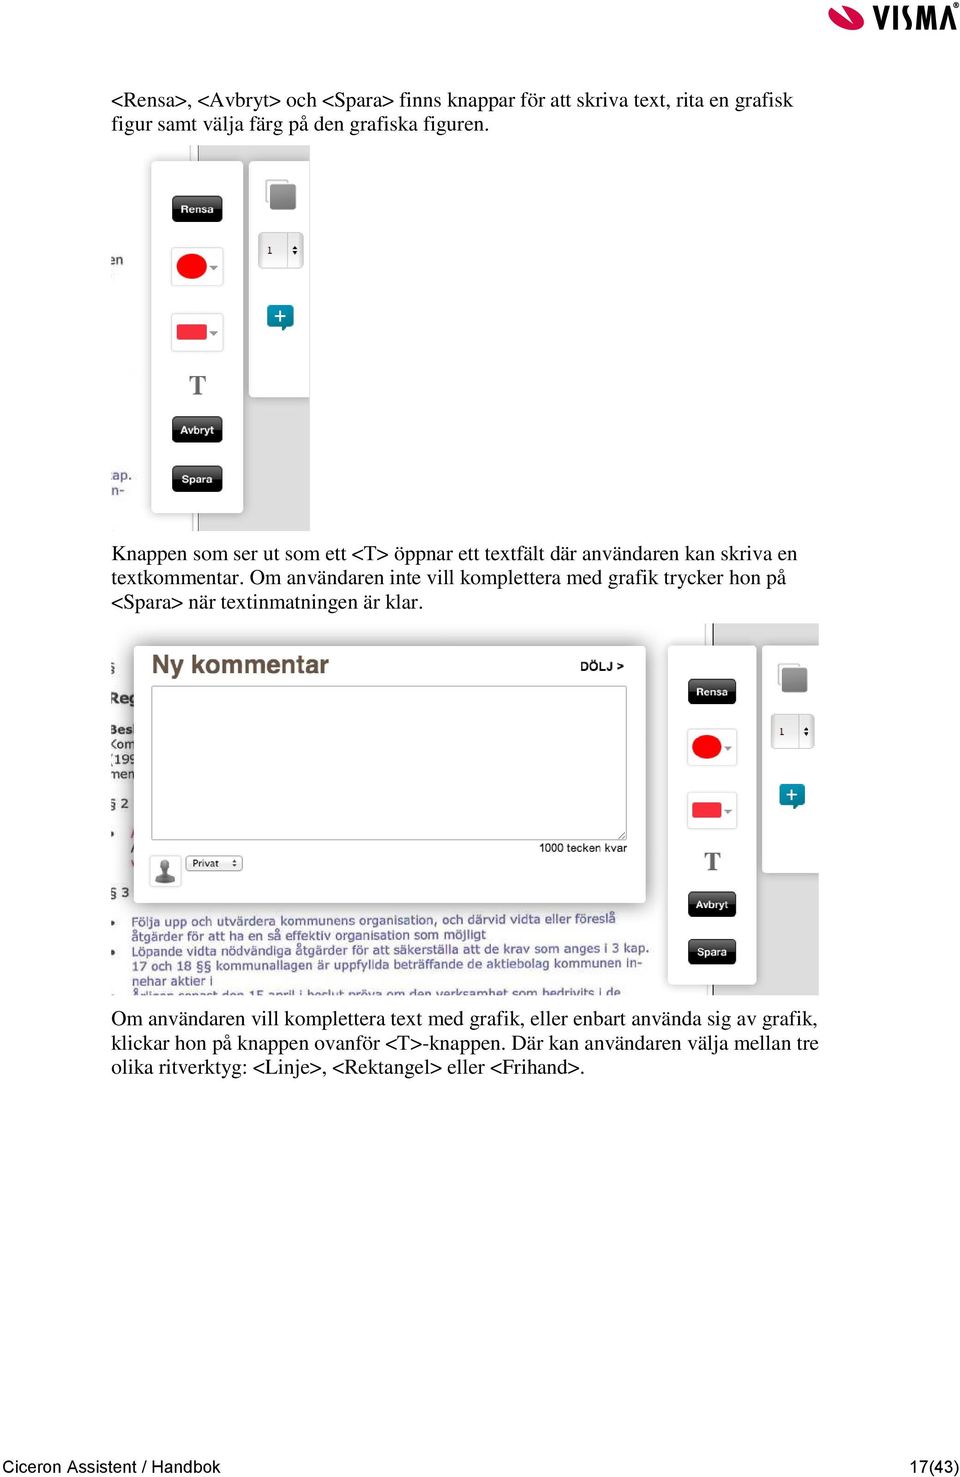 Om användaren inte vill komplettera med grafik trycker hon på <Spara> när textinmatningen är klar.